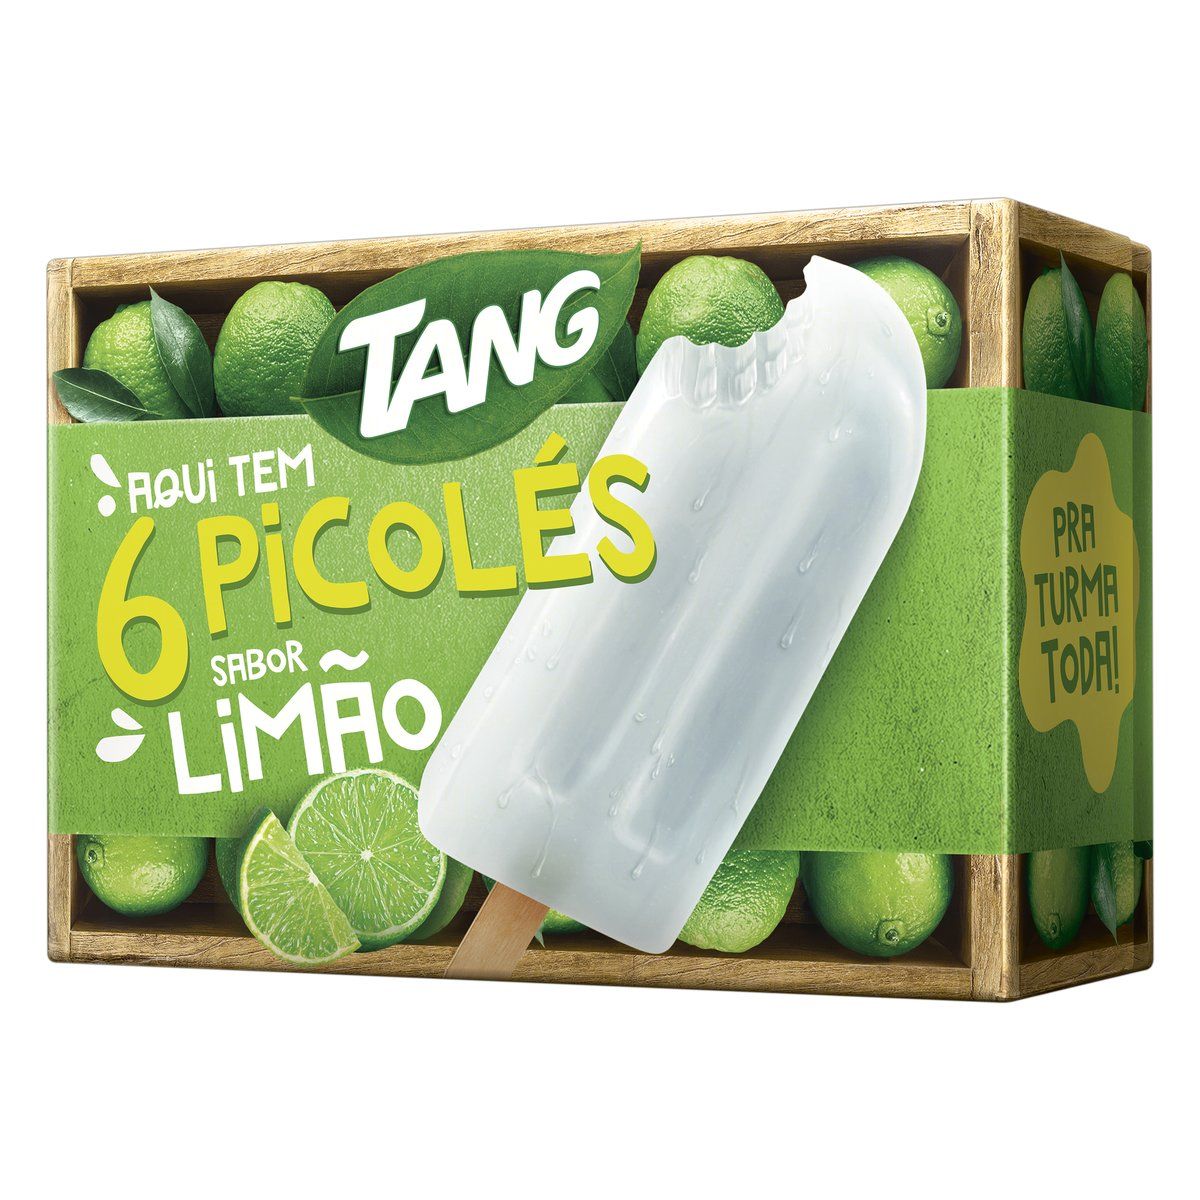 Pack Picolé Limão Tang Caixa 330g 6 Unidades image number 0